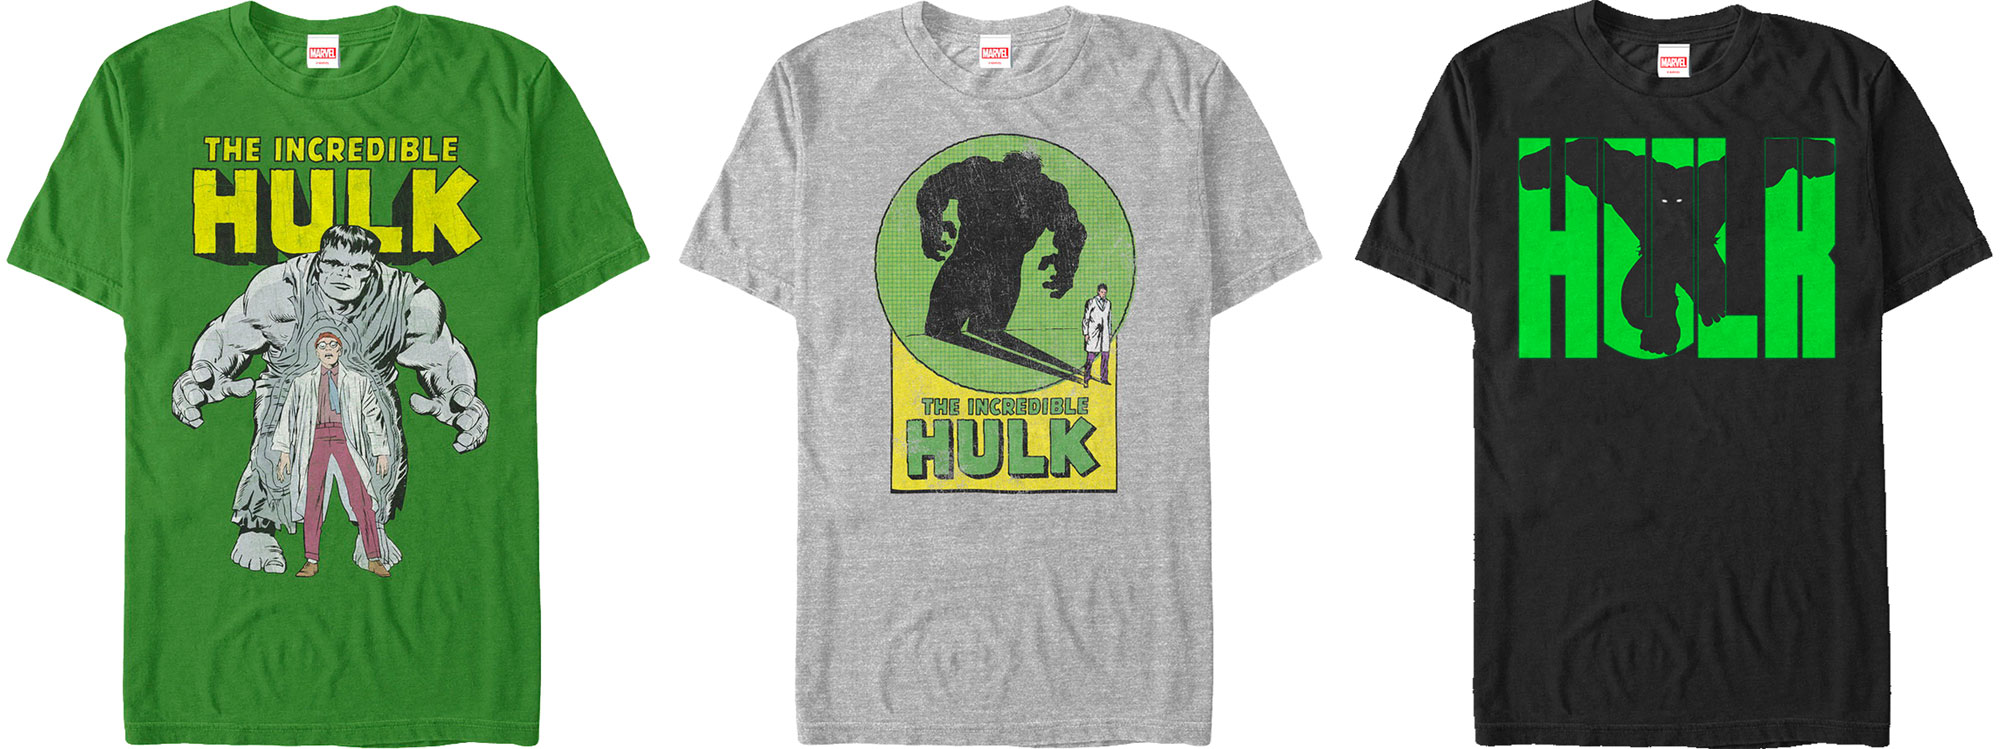 incredible hulk jordan 1 shirt